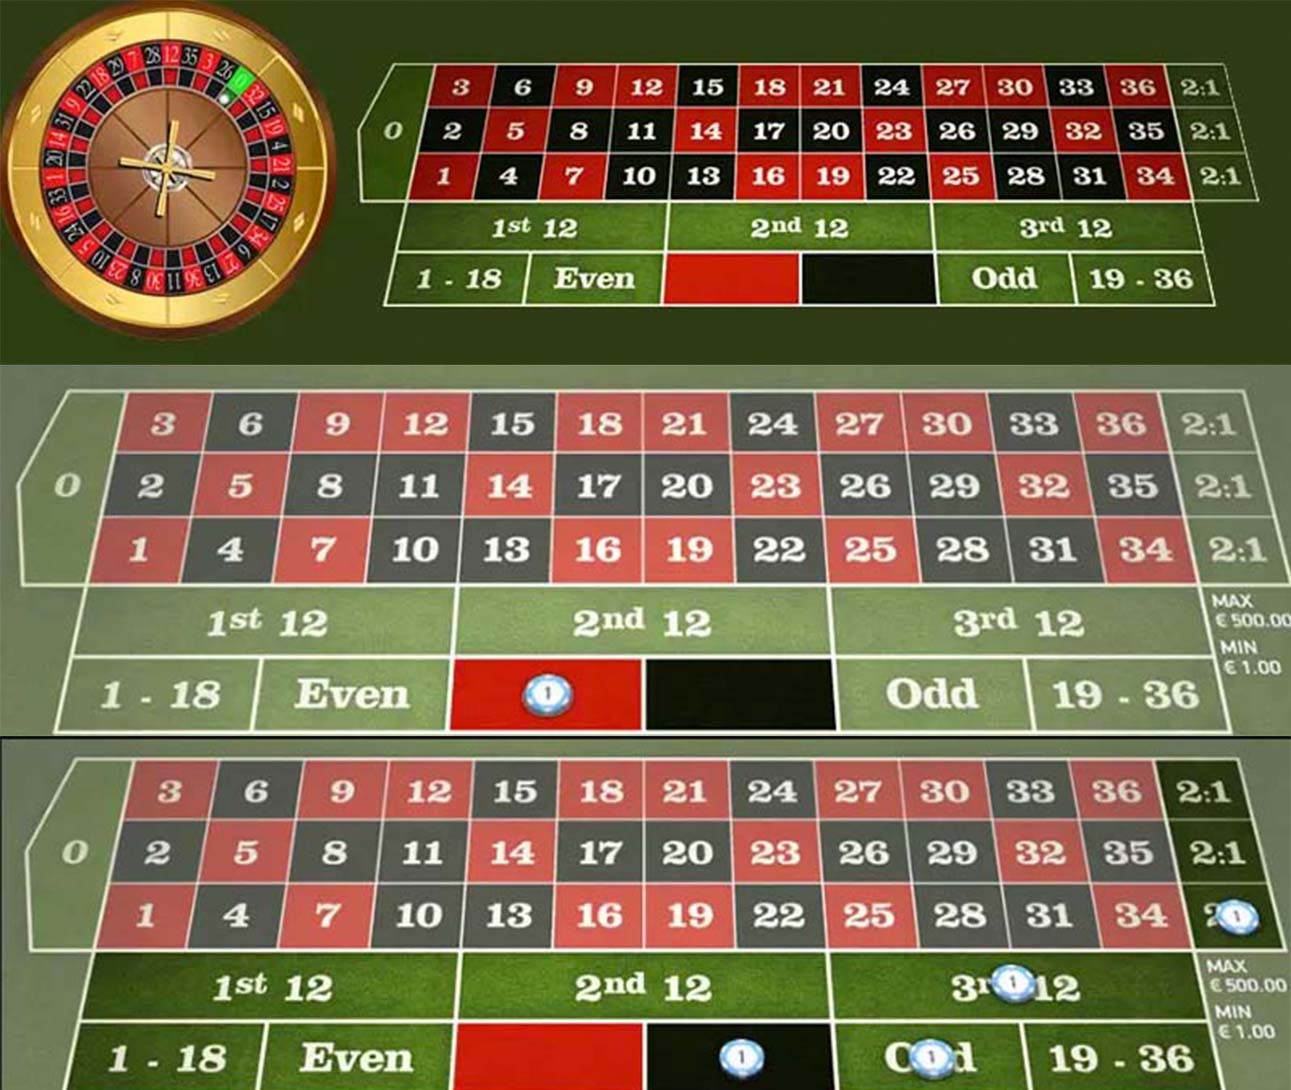 Come migliorare con roulette casino online in 60 minuti